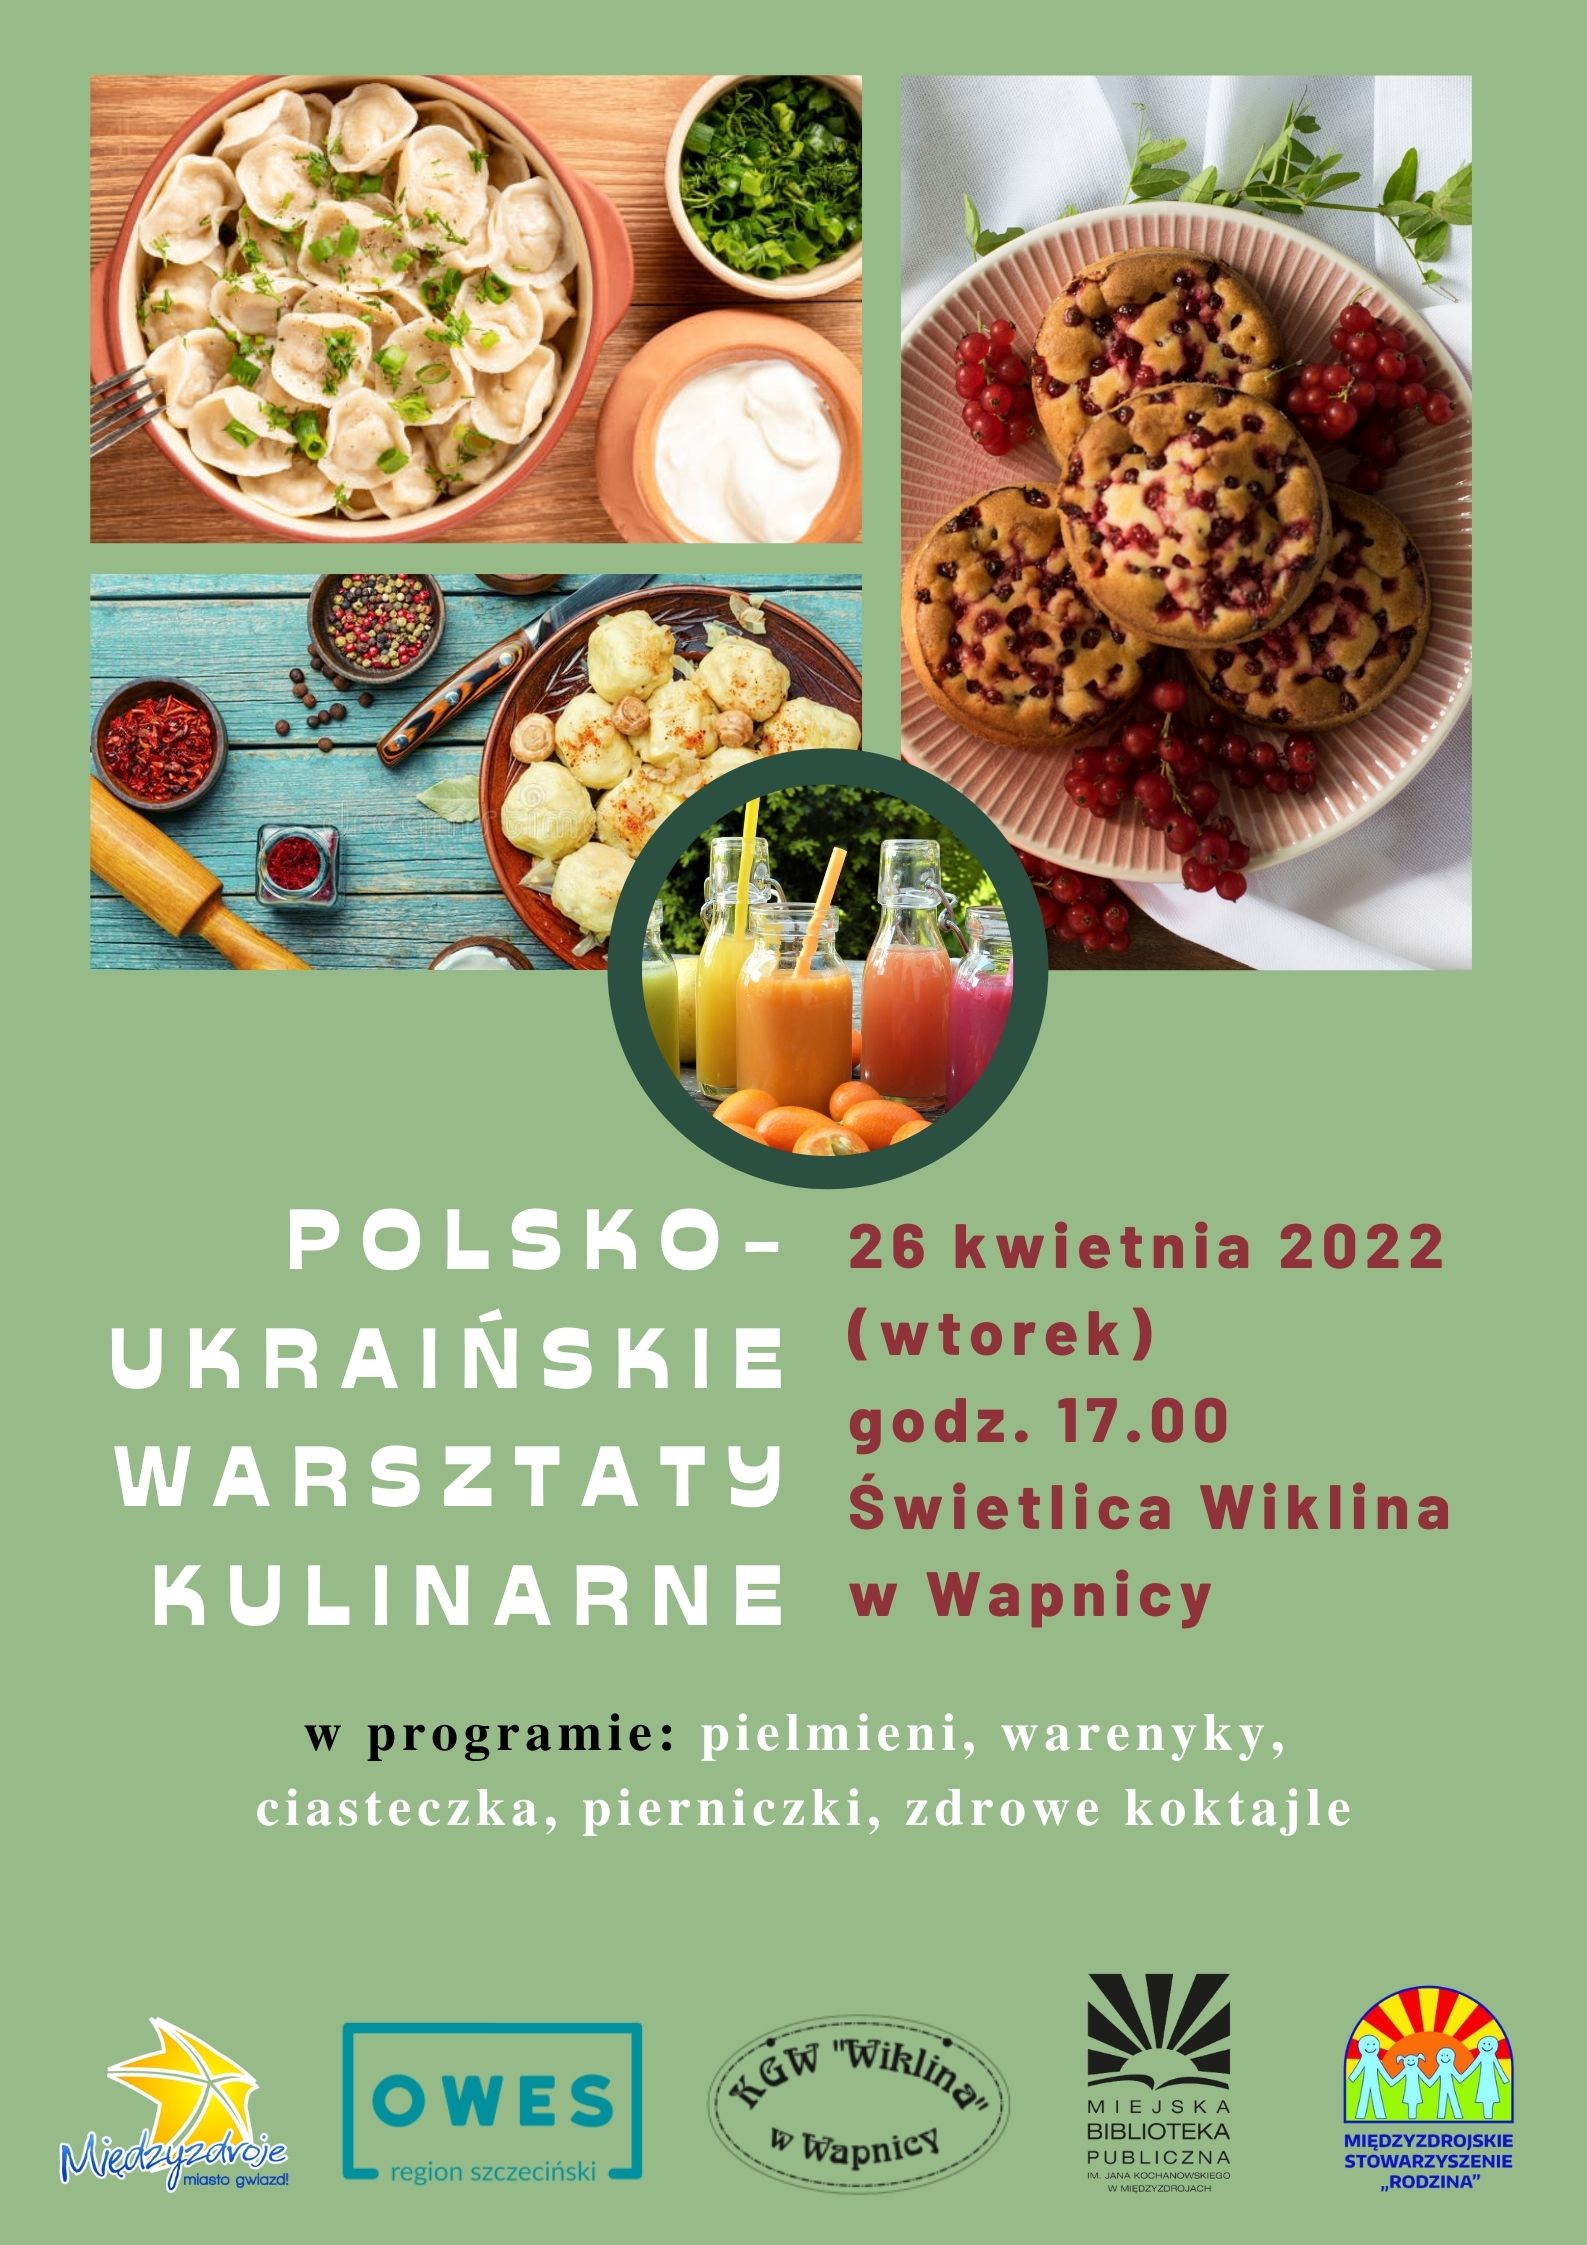 Polsko-ukraińskie warsztaty kulinarne 26 kwietnia 2022 r. - zapowiedź